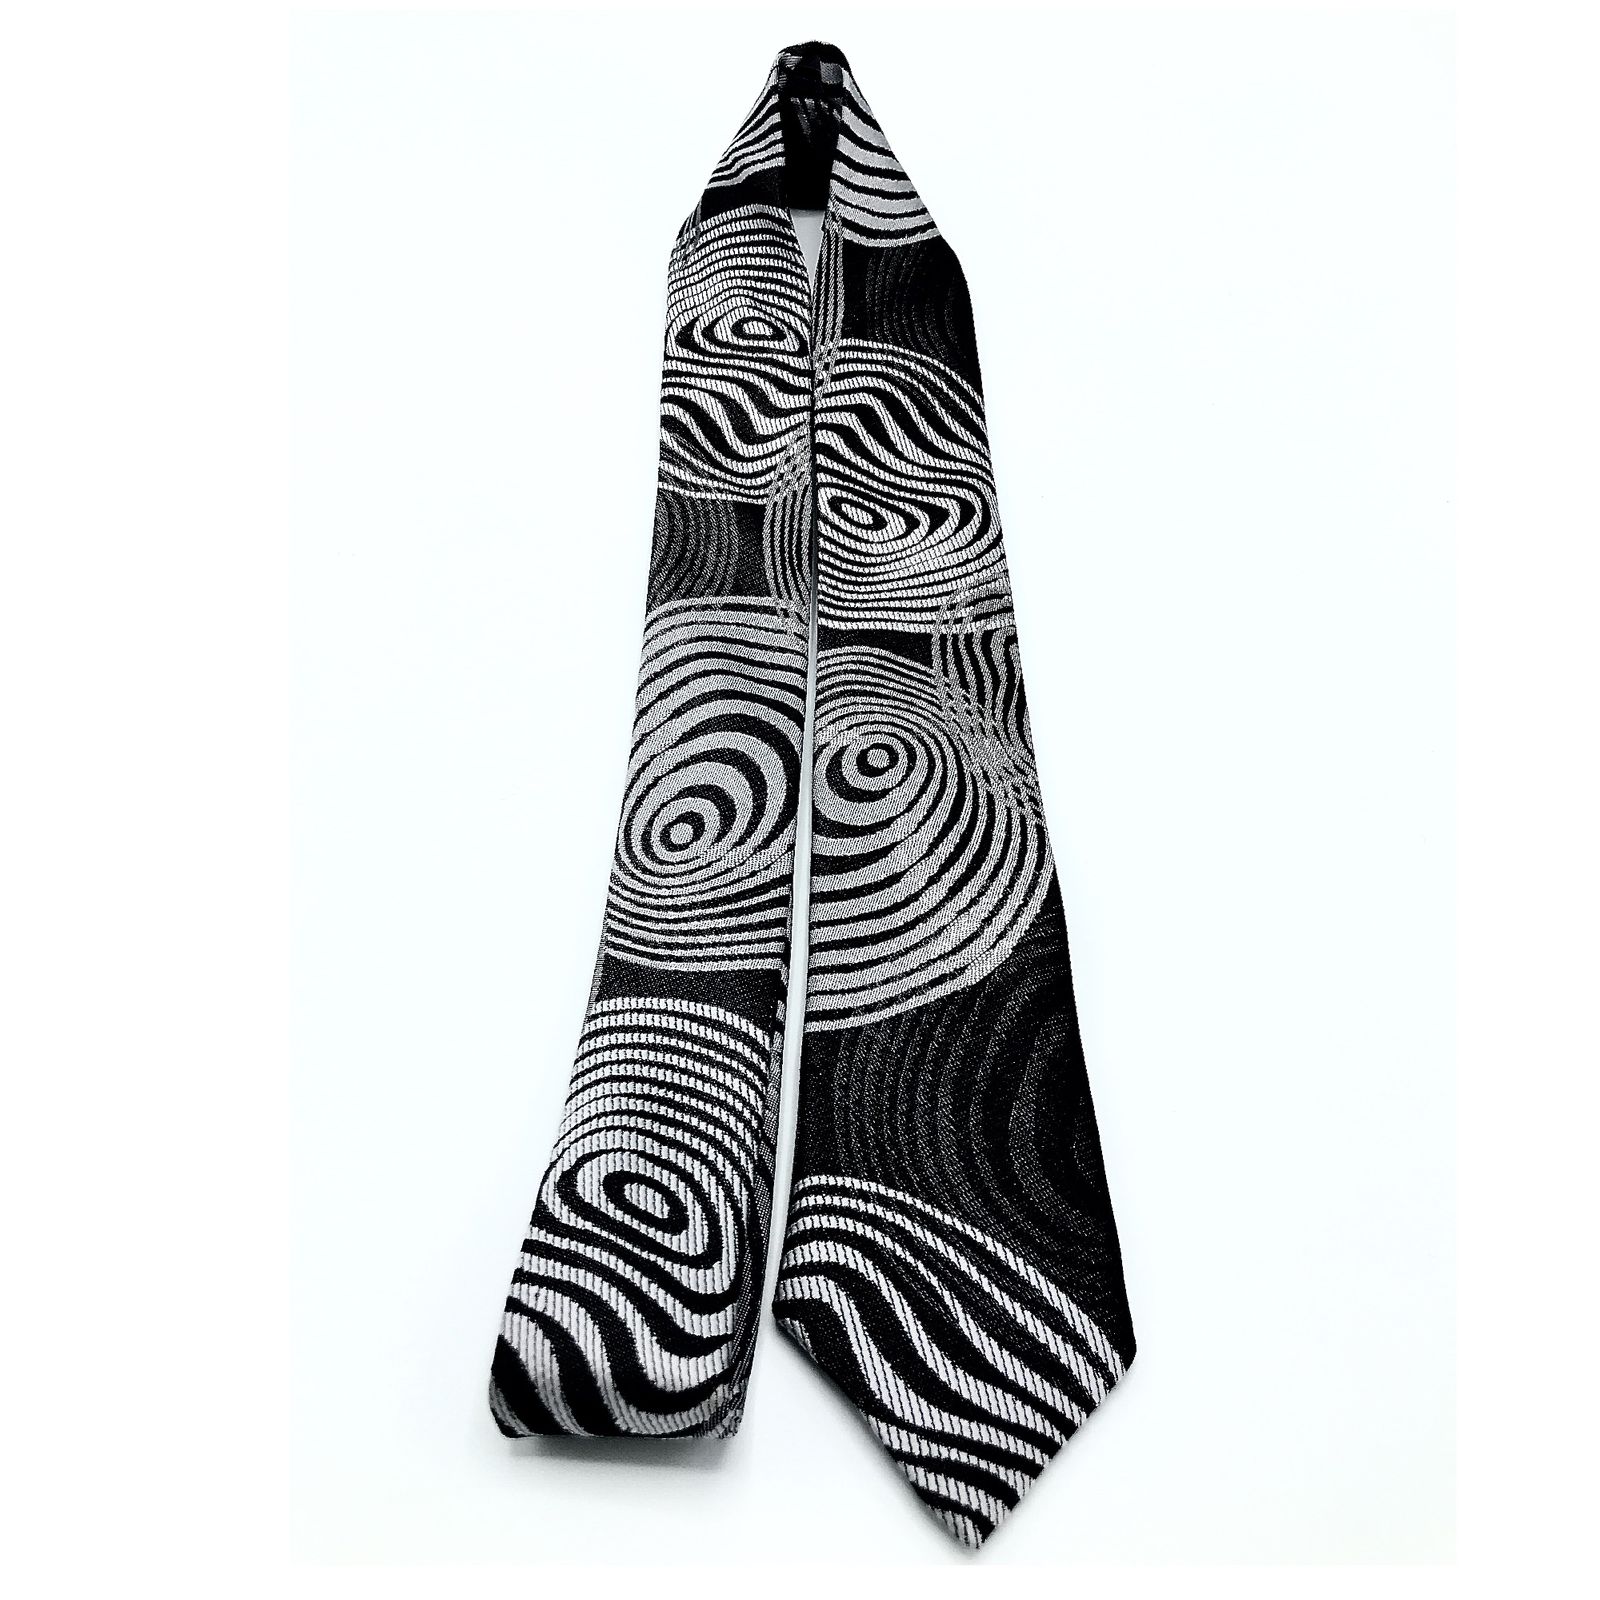  کراوات مردانه هکس ایران مدل KT-BK DYR -  - 2